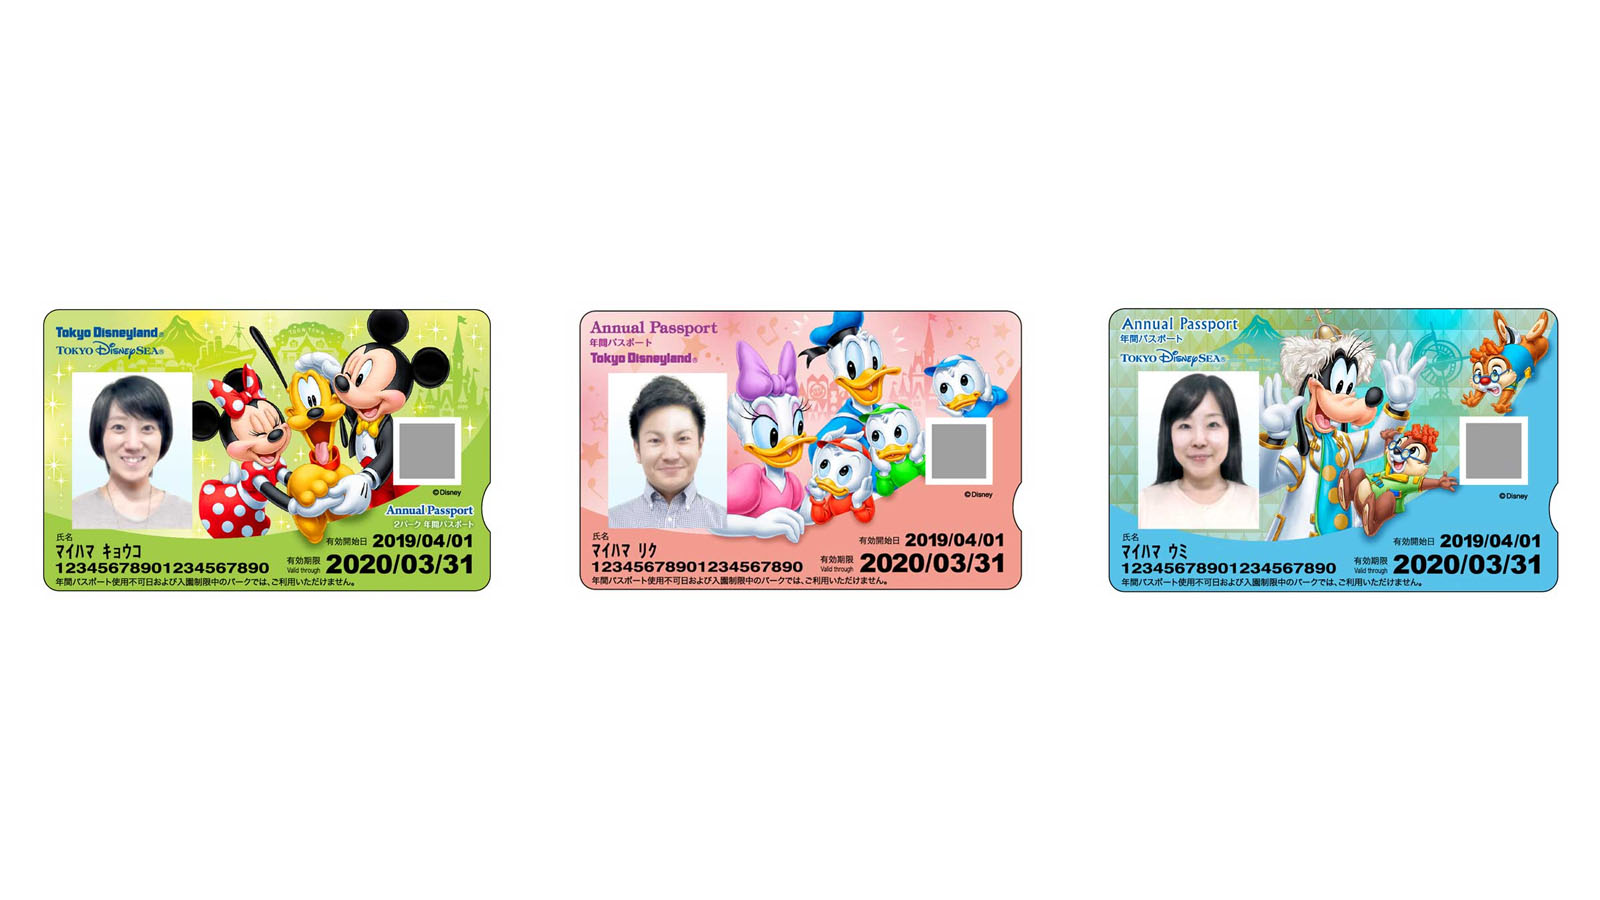 Tdl Tds年間パスポート新デザイン公開 19年3月26日から適用で 7年ぶりにイラストのみのデザインに Disney Colors Blog